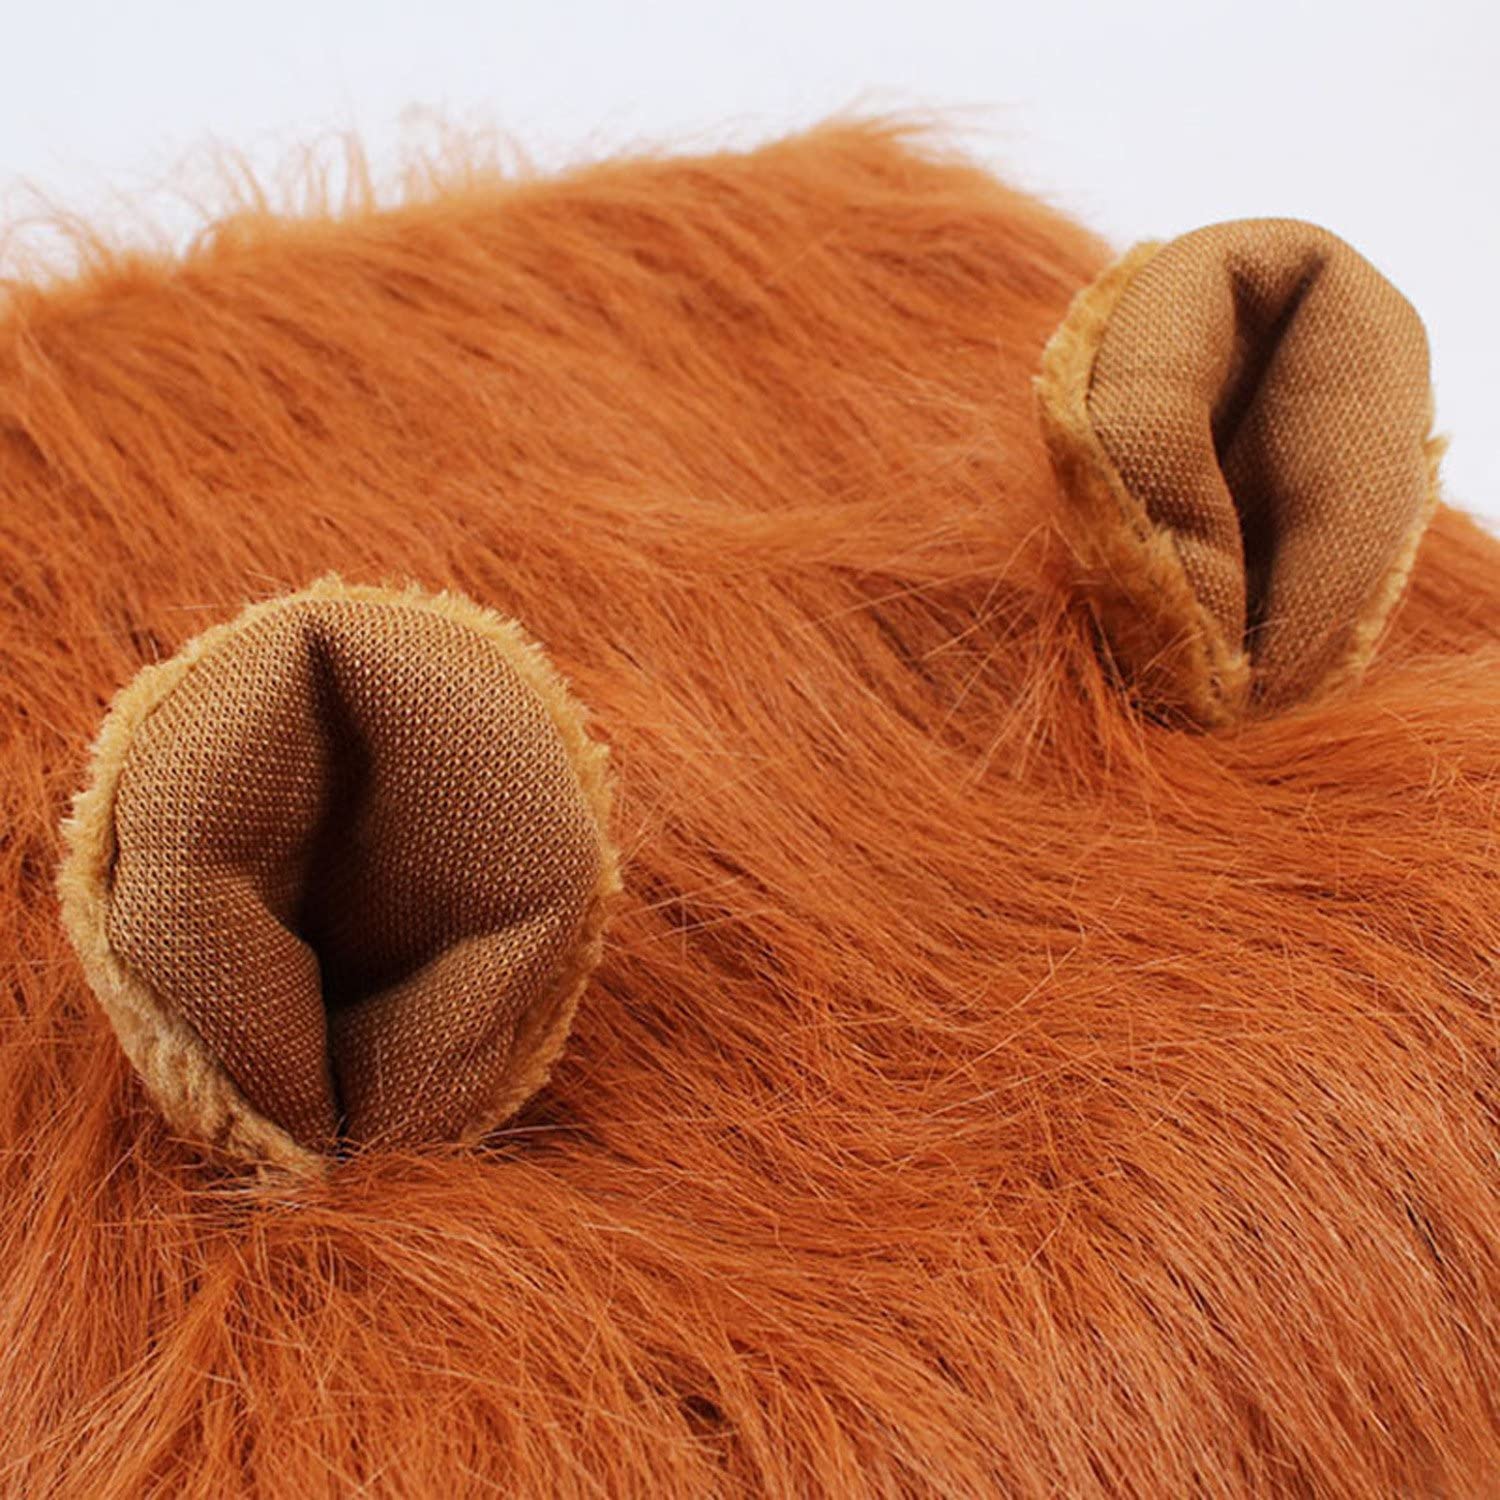  Peluca de León Para Perro, Etpark León melena pelo peluca con orejas Gato Cachorro Mascotas Ropa Sombrero Dress Disfraces Costume Para Navidad Fiesta (Brown) 